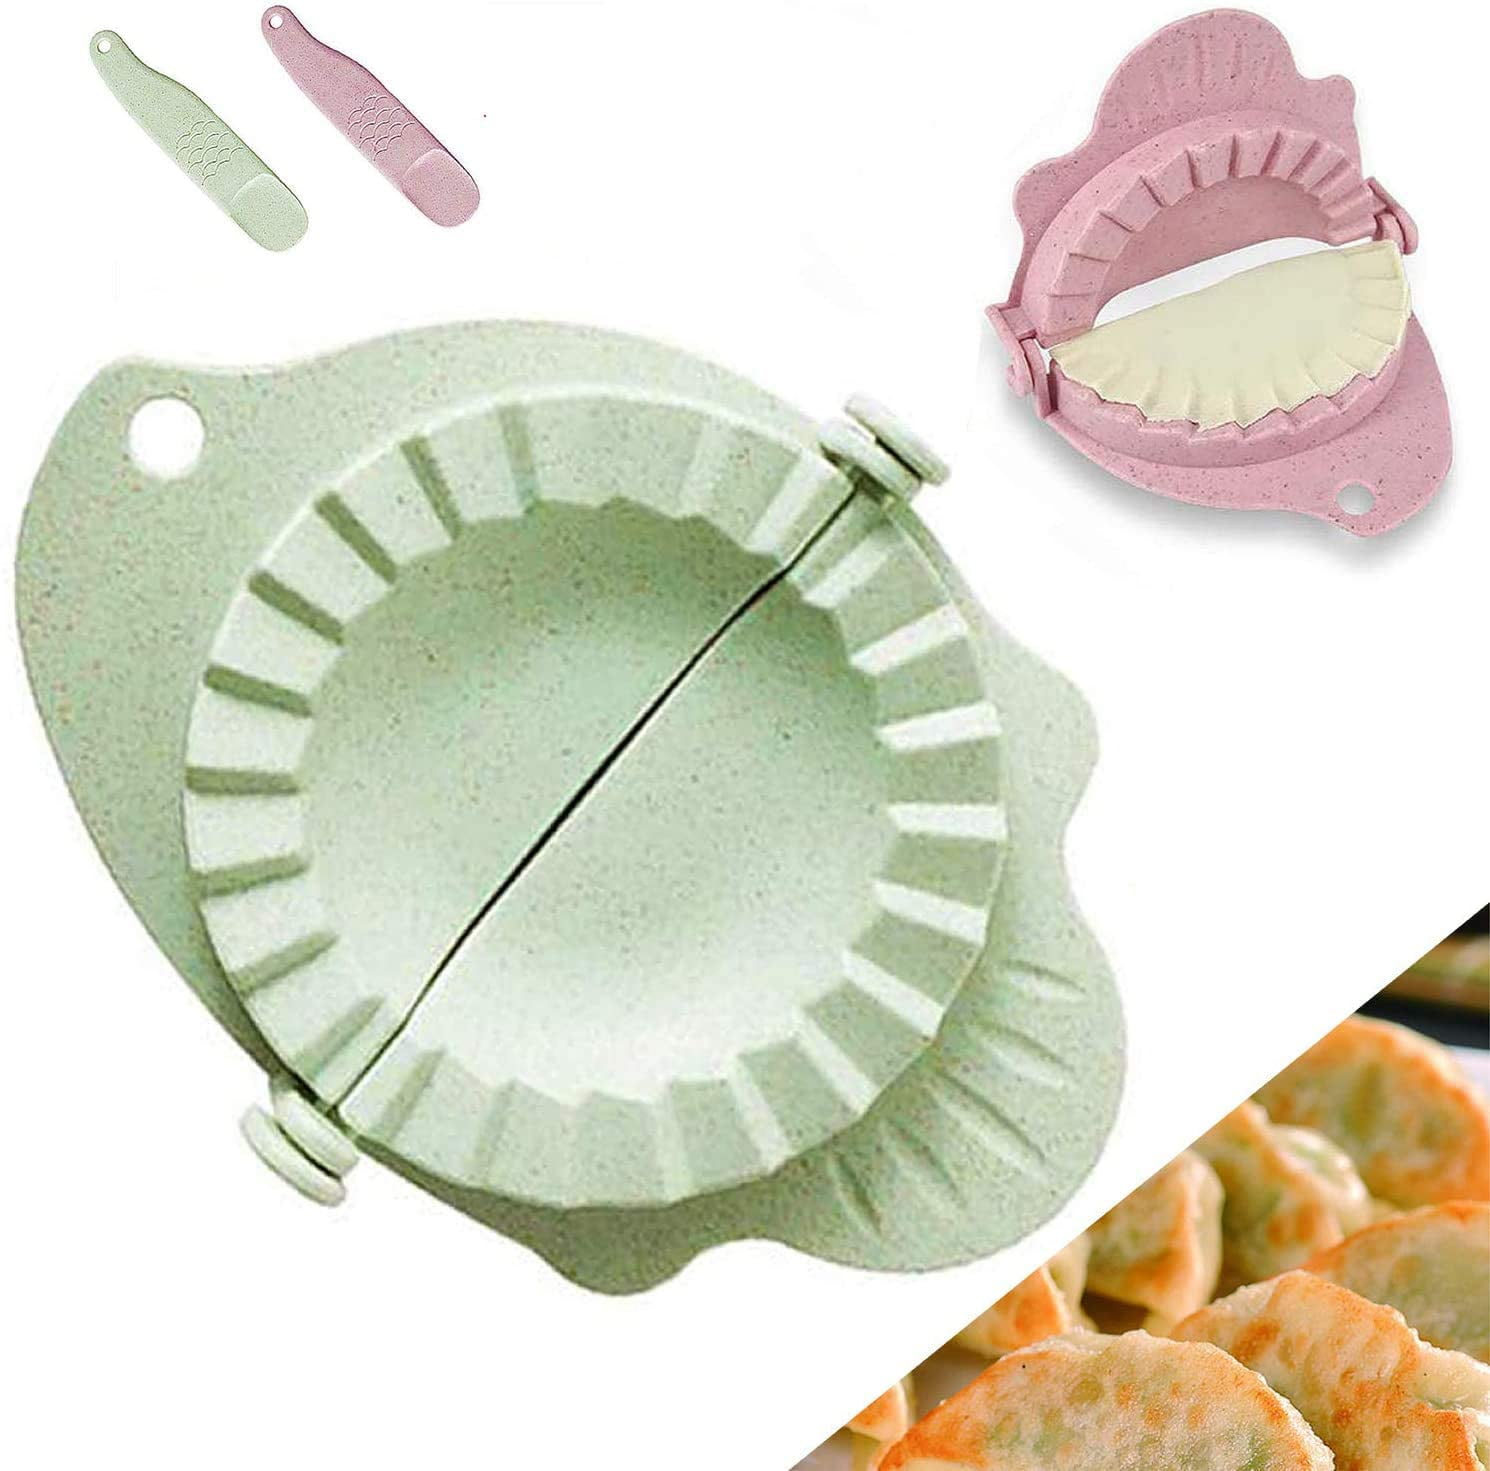 Dumplings Maker, 8 Packs Stainless Steel Empanada Press Mold Kit